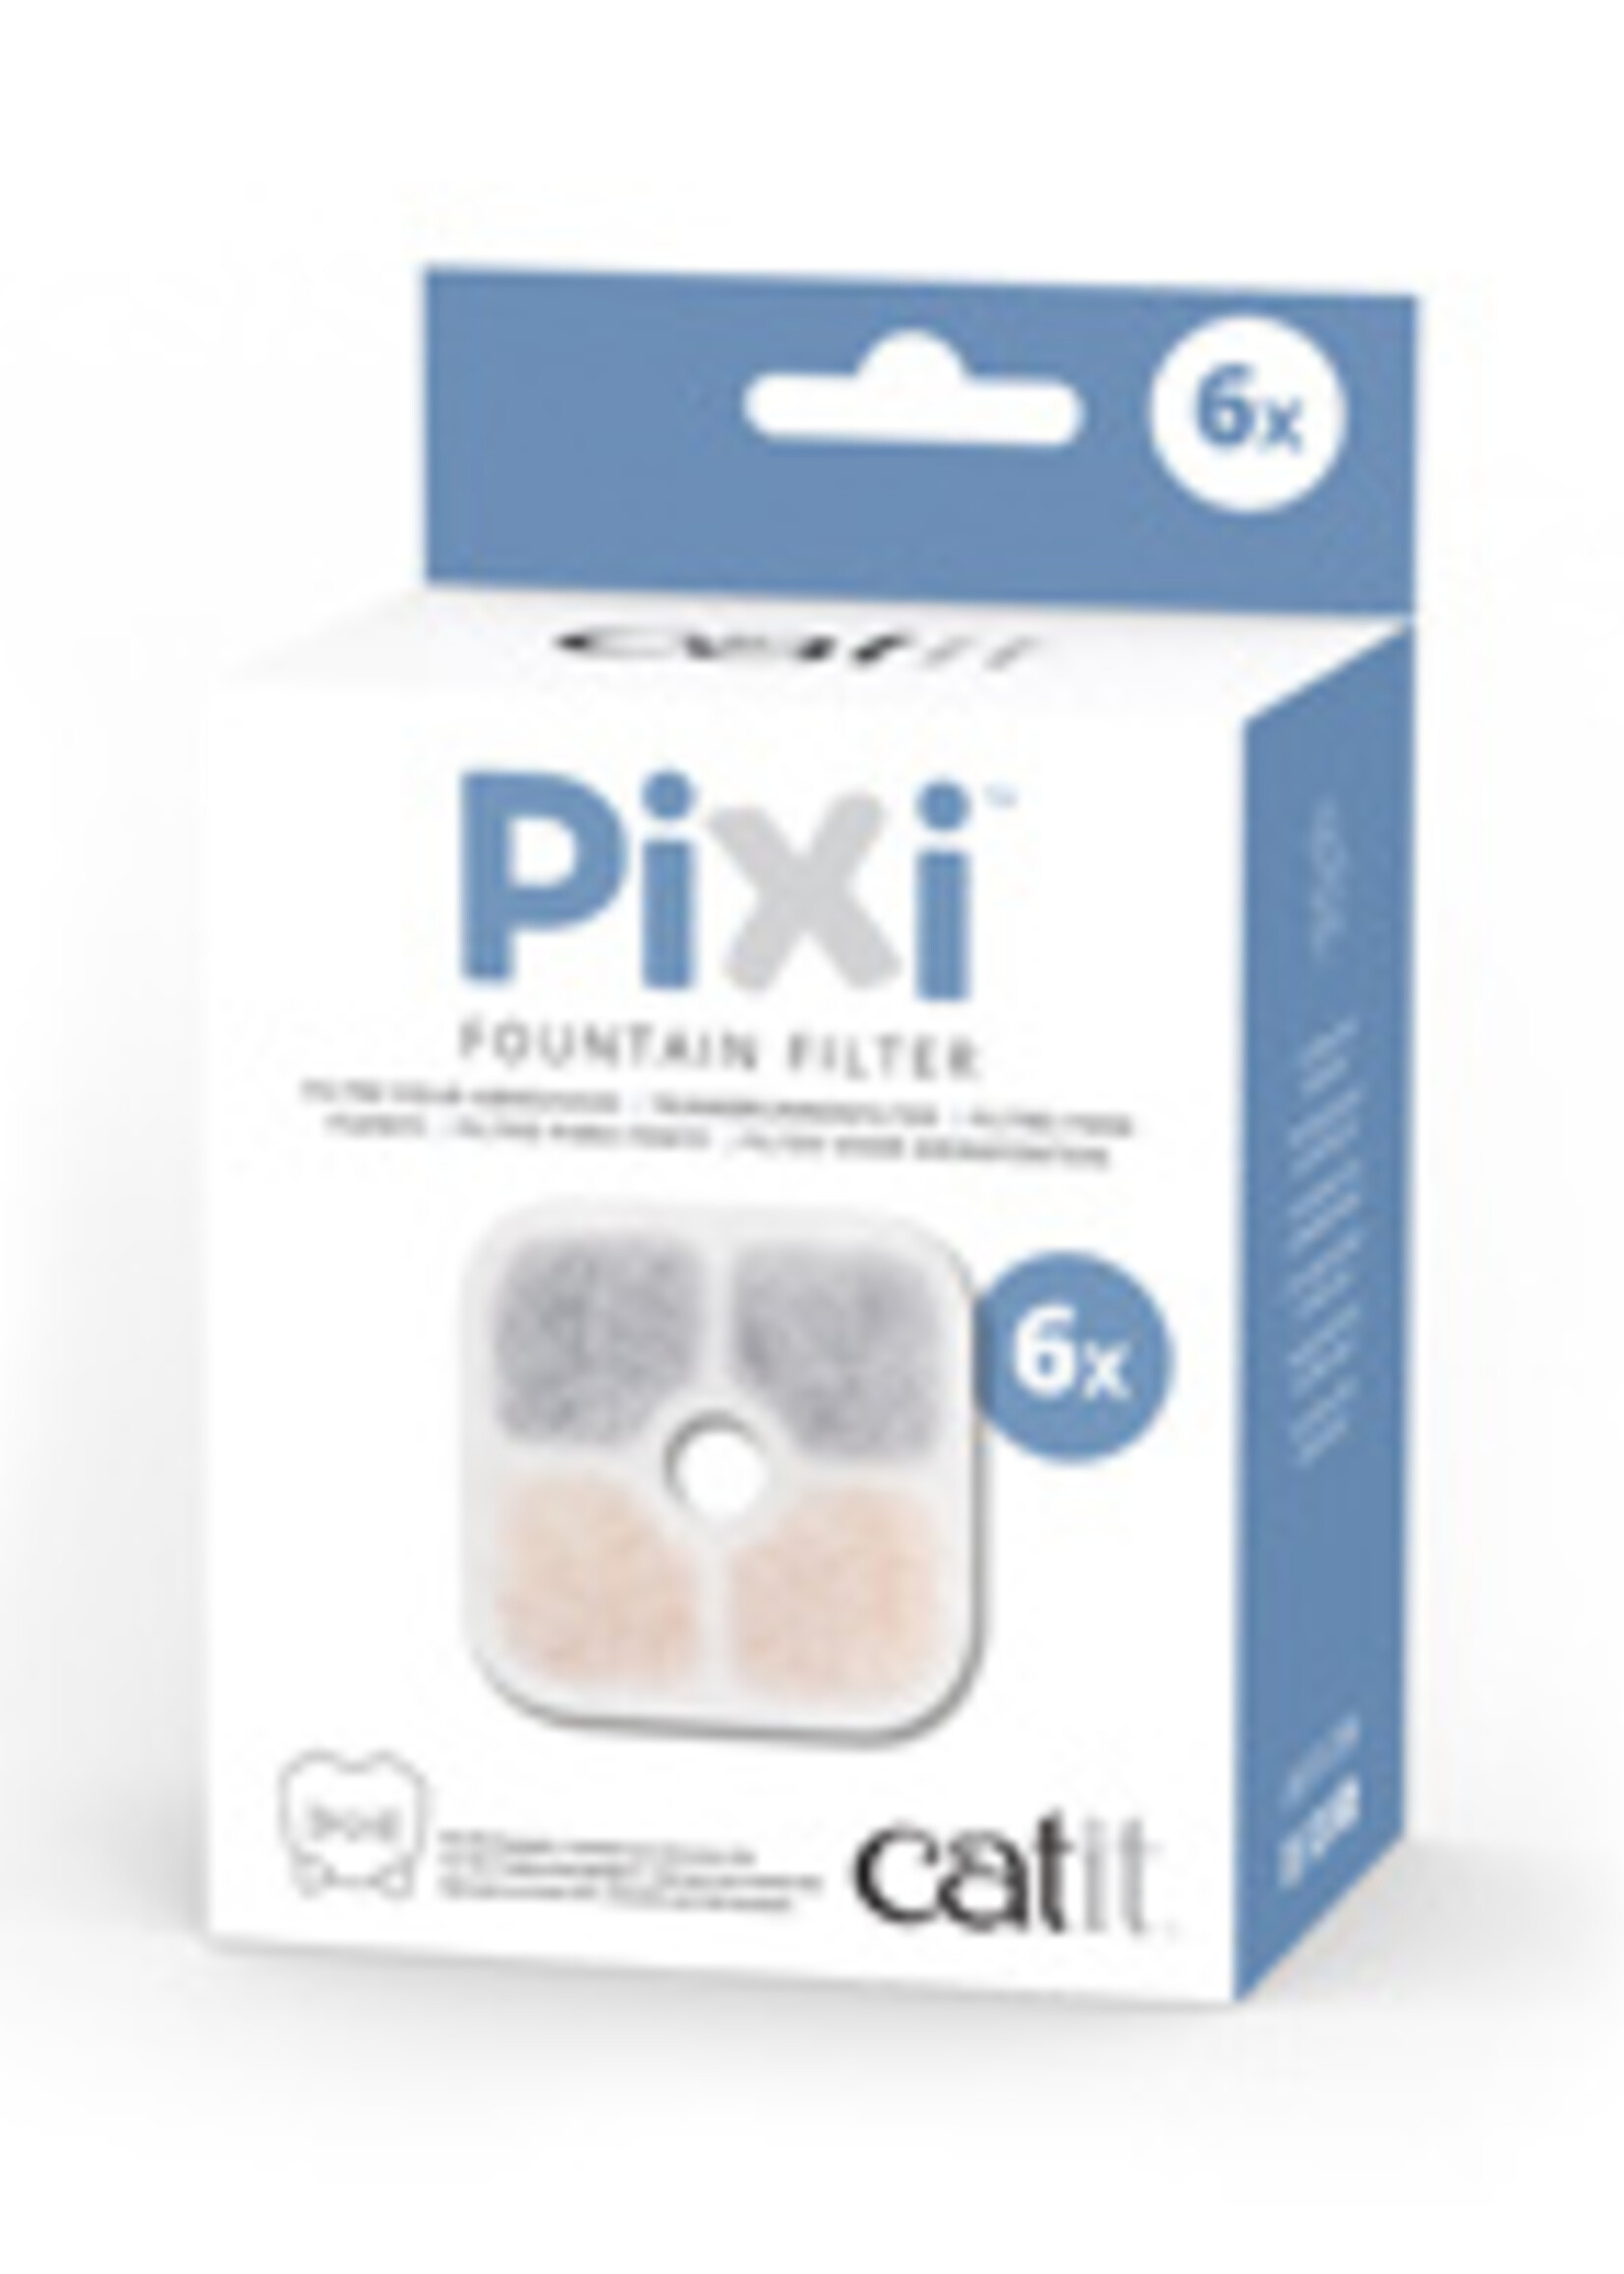 CA - Catit Catit PIXI Fountain Cartridges